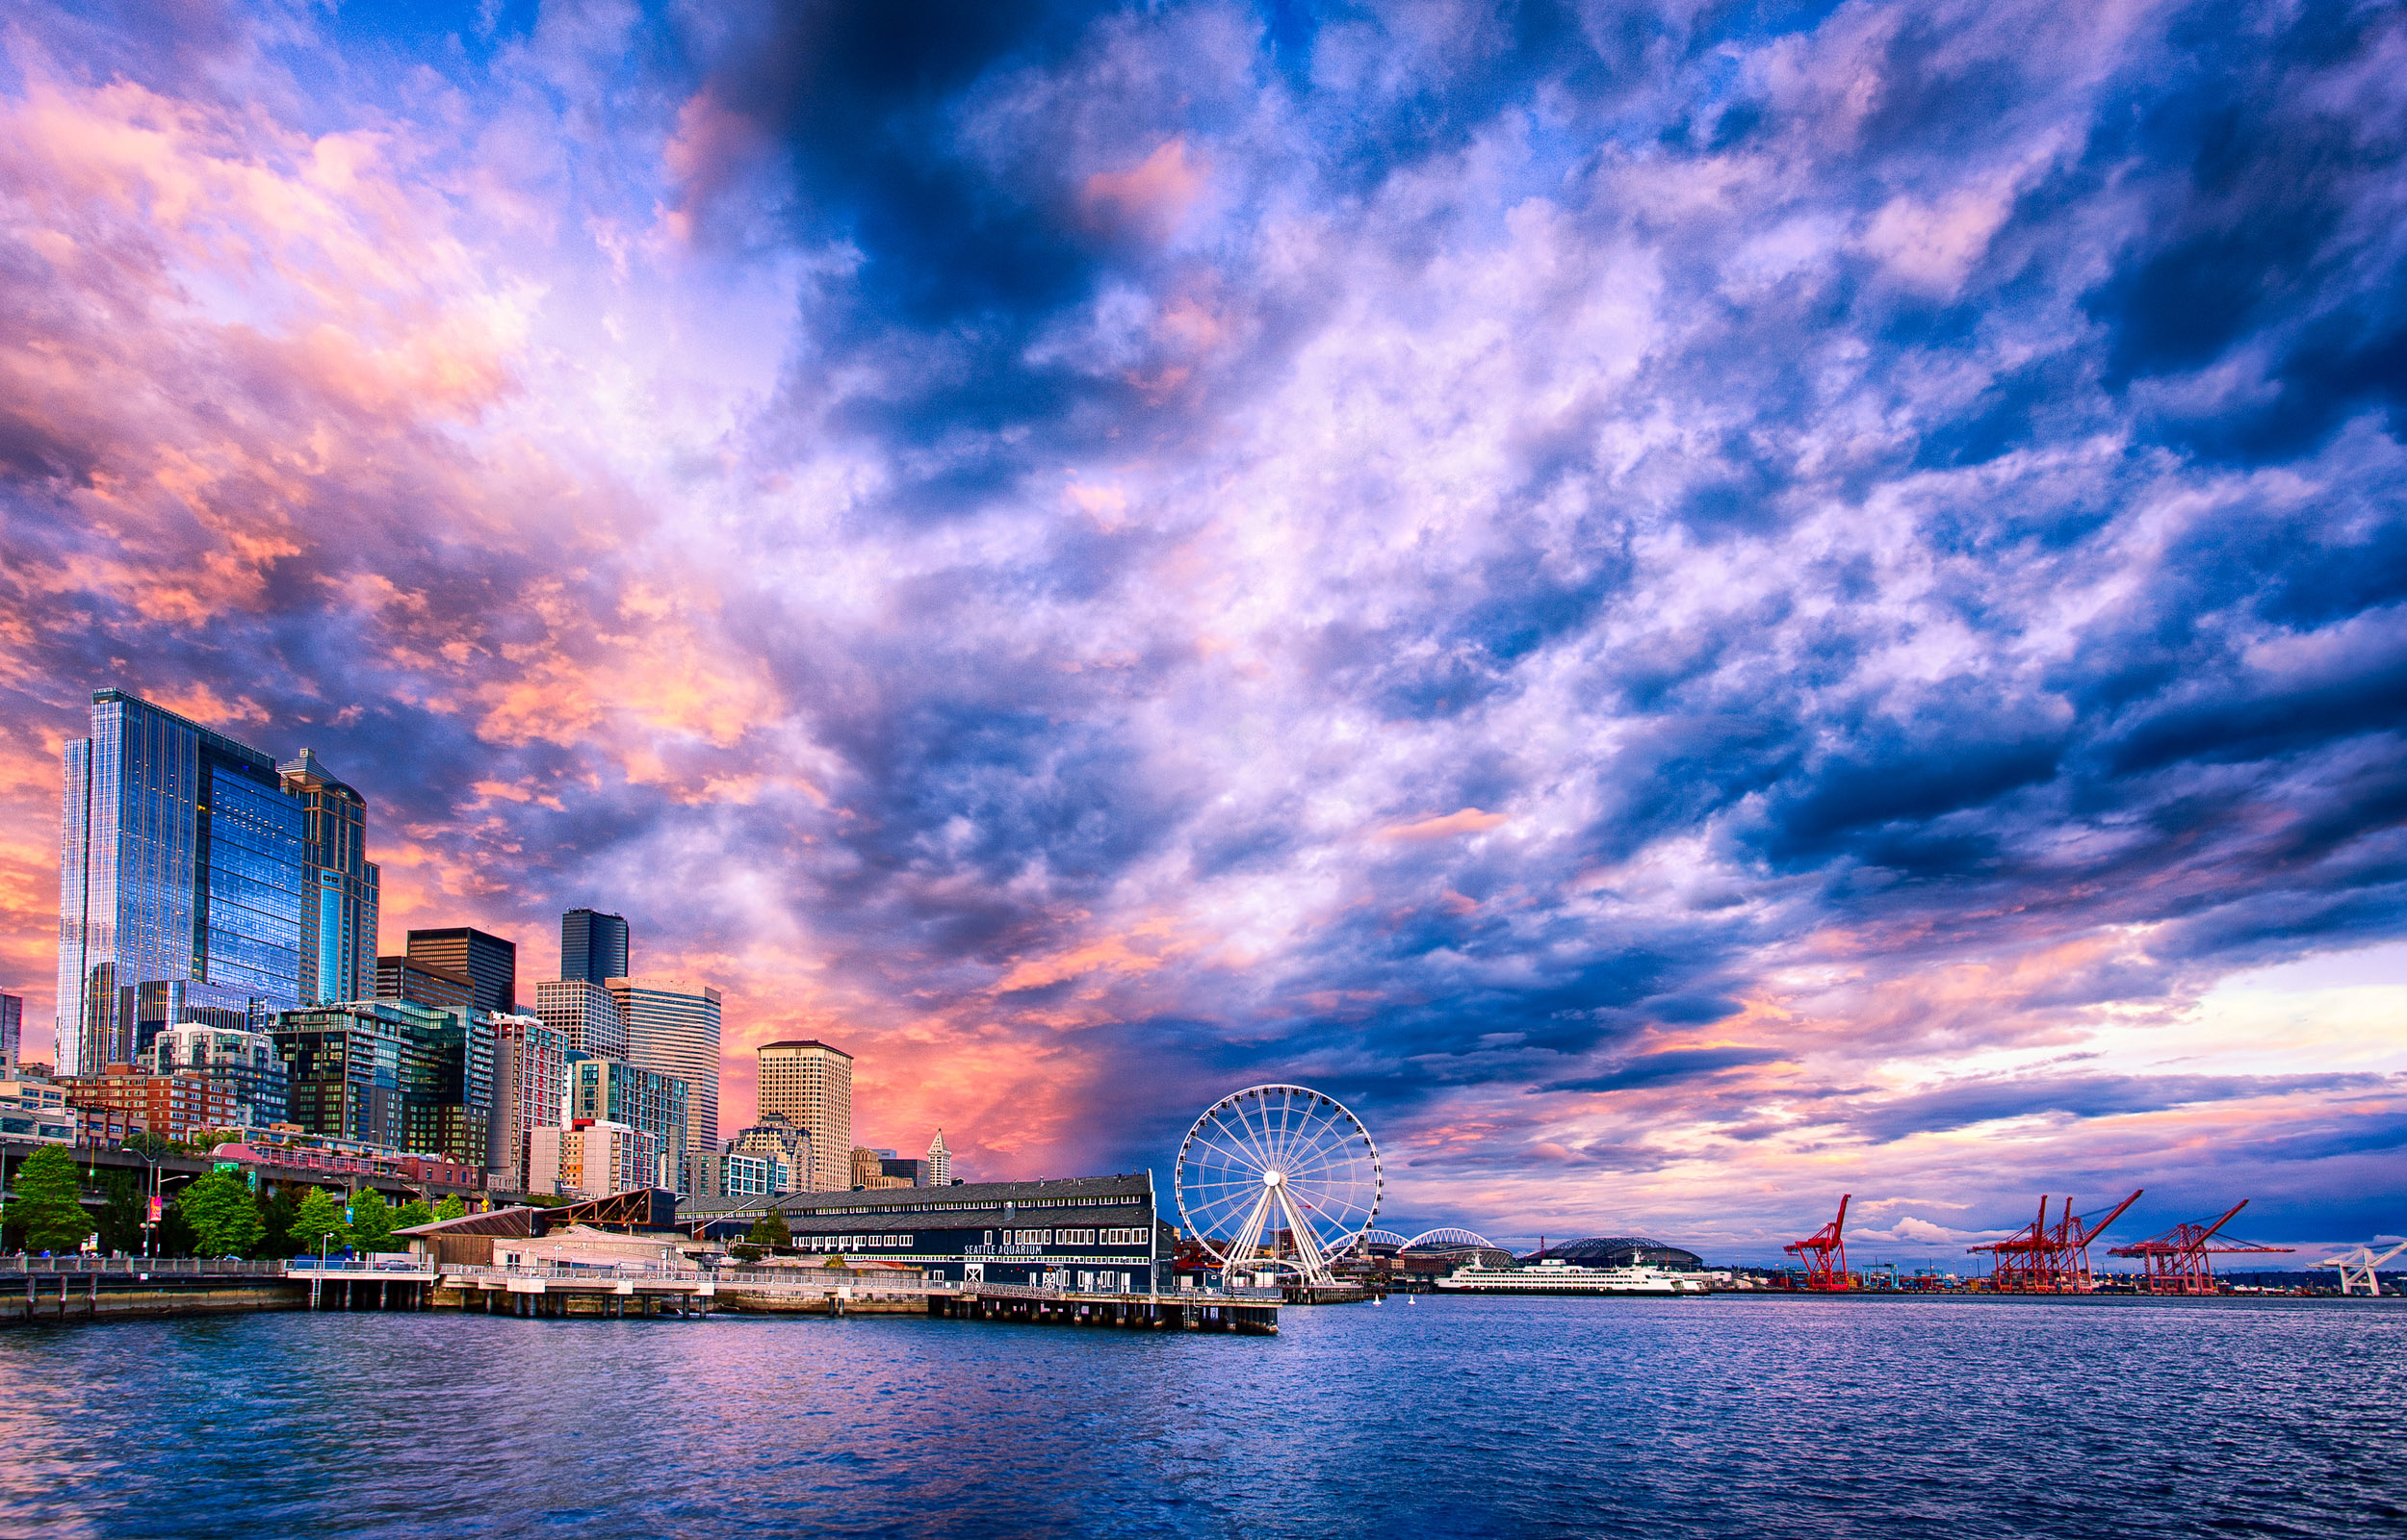 Seattle, Sunset on the waterfront, Desktop wallpaper delight, Scenic beauty, 2500x1600 HD Desktop